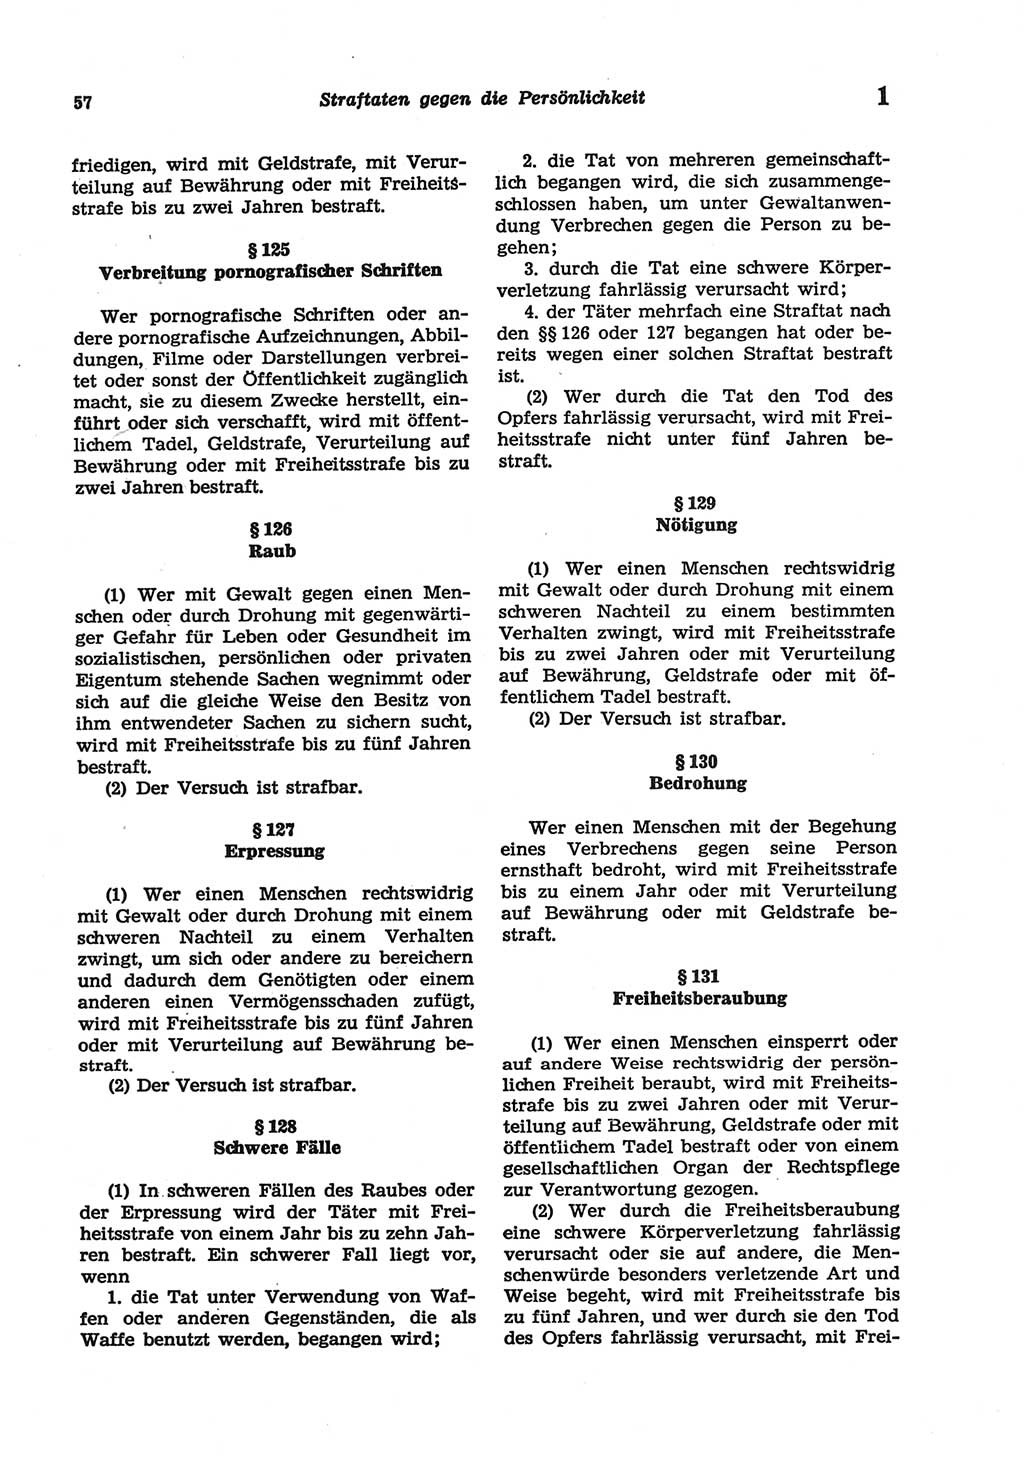 Strafgesetzbuch (StGB) der Deutschen Demokratischen Republik (DDR) und angrenzende Gesetze und Bestimmungen 1977, Seite 57 (StGB DDR Ges. Best. 1977, S. 57)